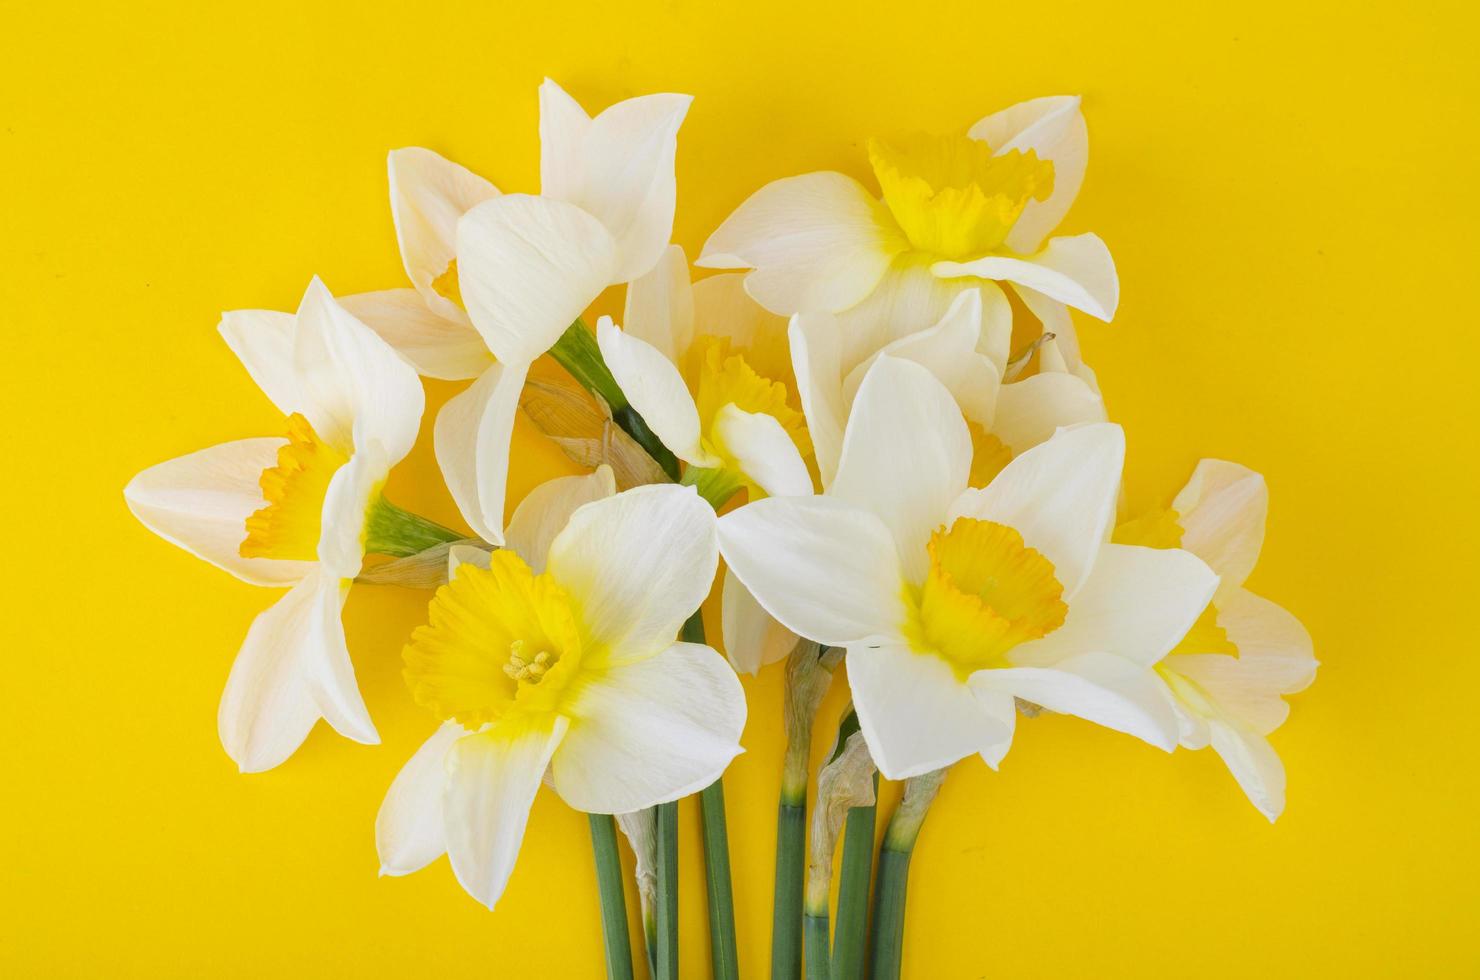 bleke lichte bloemen van narcissen op felgele achtergrond foto